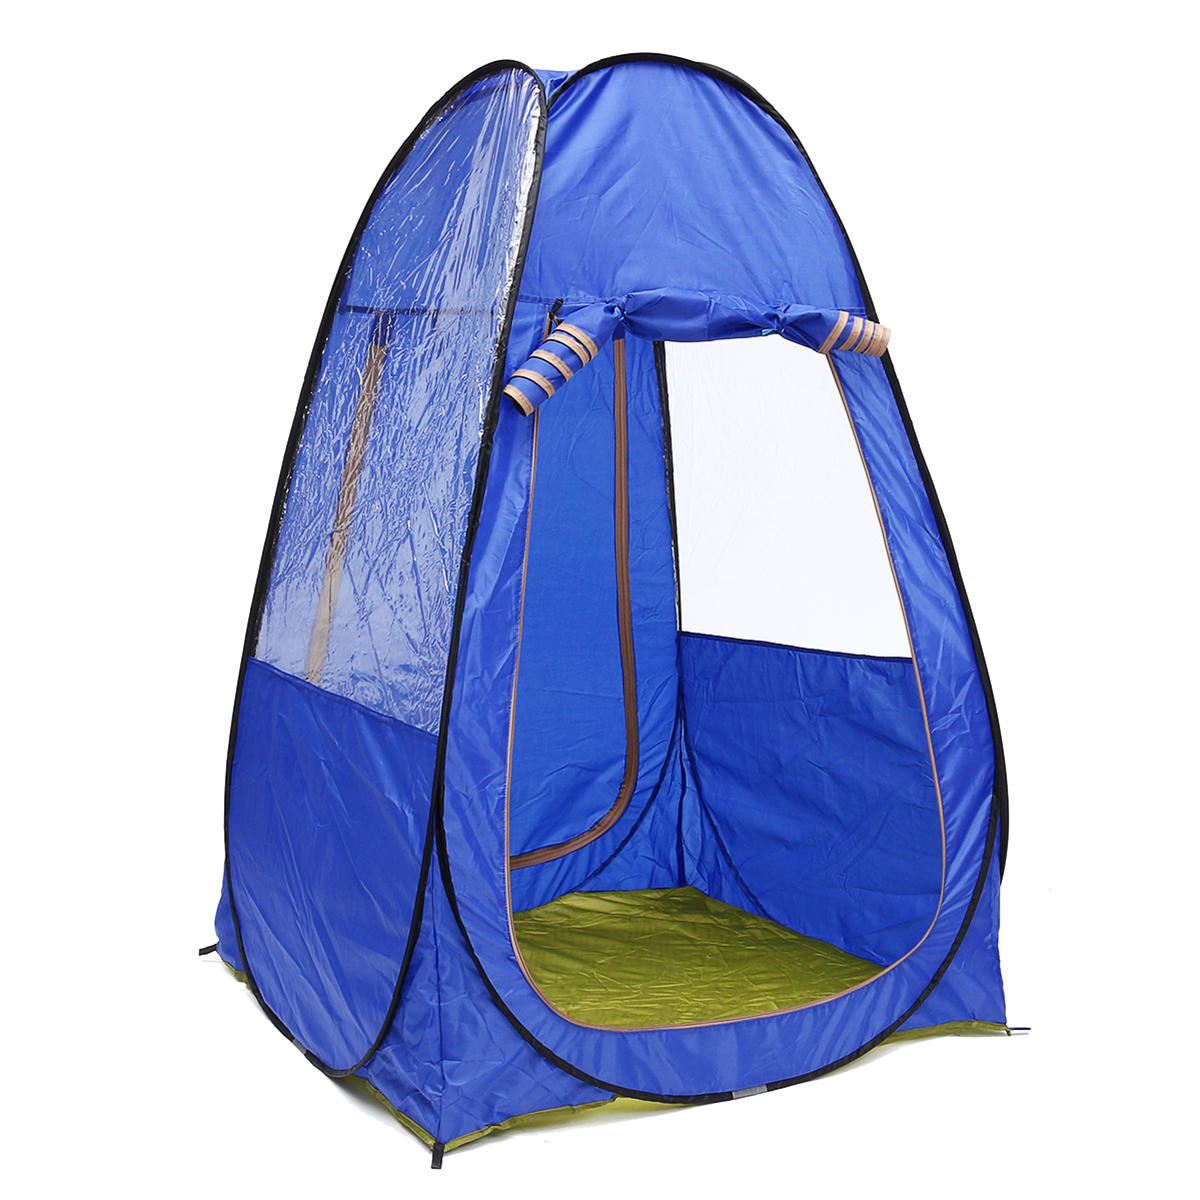 1-2 kişilik taşınabilir kamp çadırı, katlanabilir, UV korumalı, su geçirmez, güneşlikli